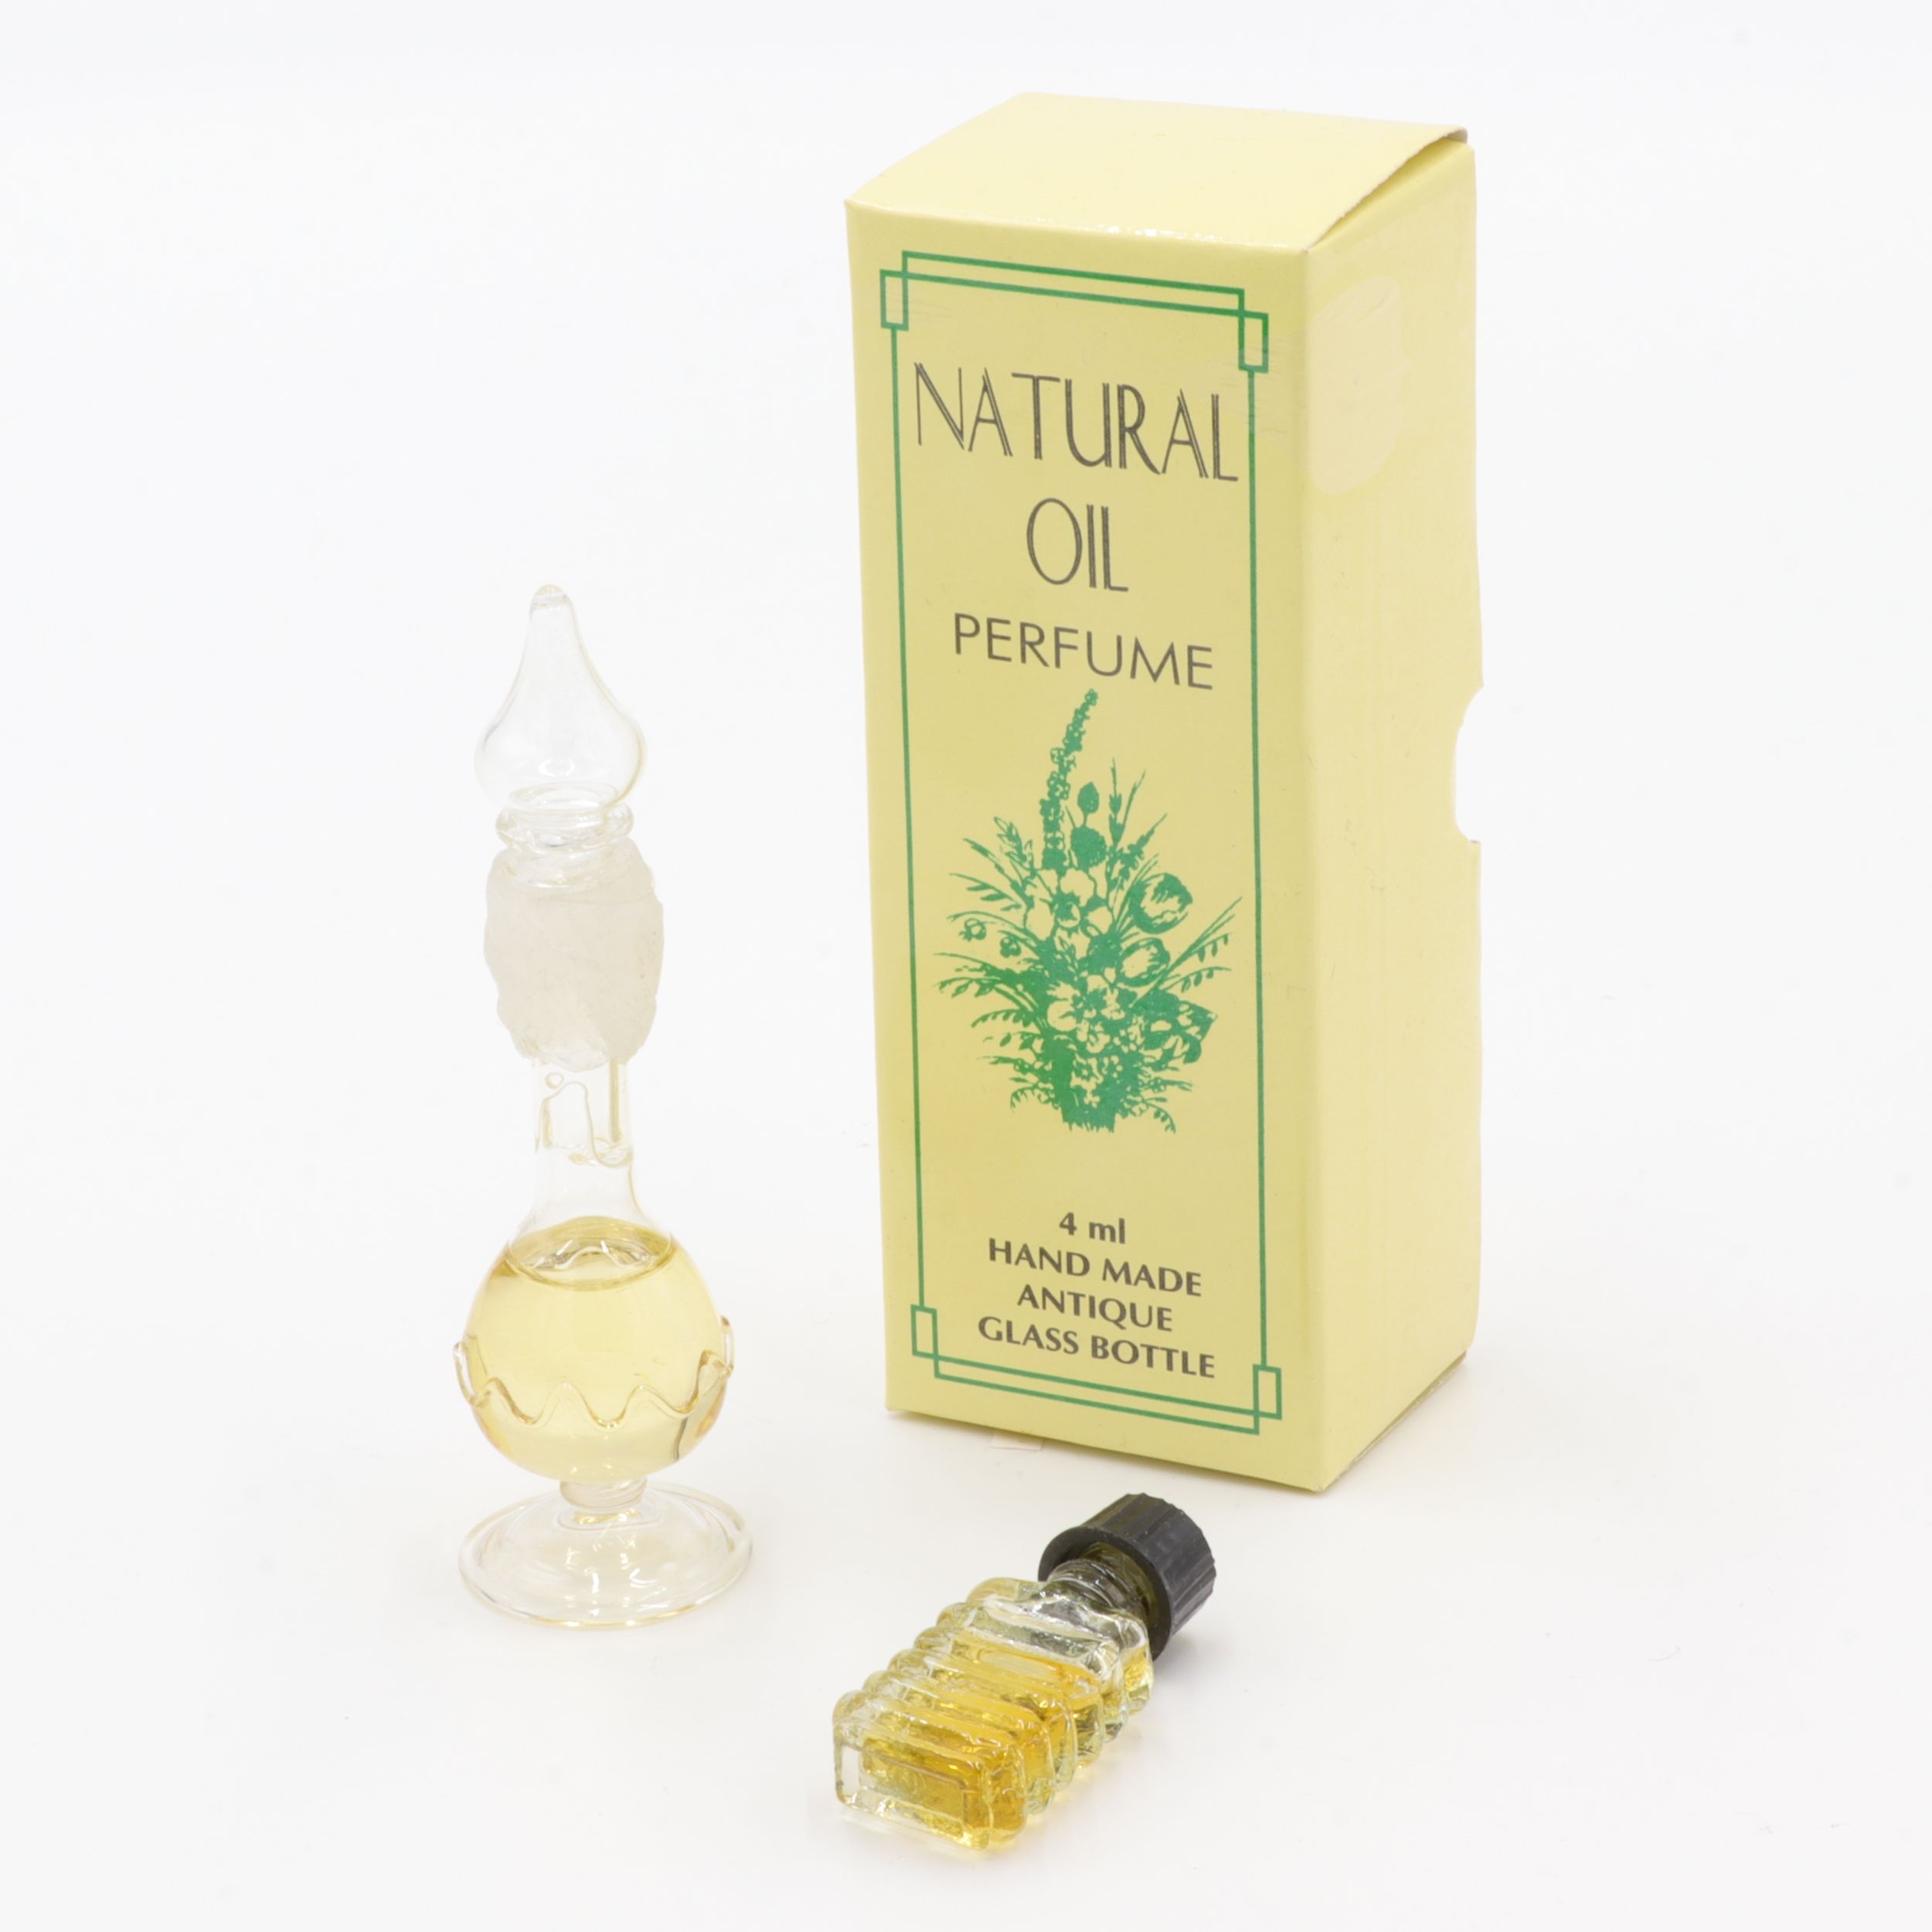 Natürliches Parfüm Öl - Antik-Flakon - Opium - feiner Duft wie eine Reise nach Indien - aus feinsten indischen Zuten - in handgemachtem Flakon